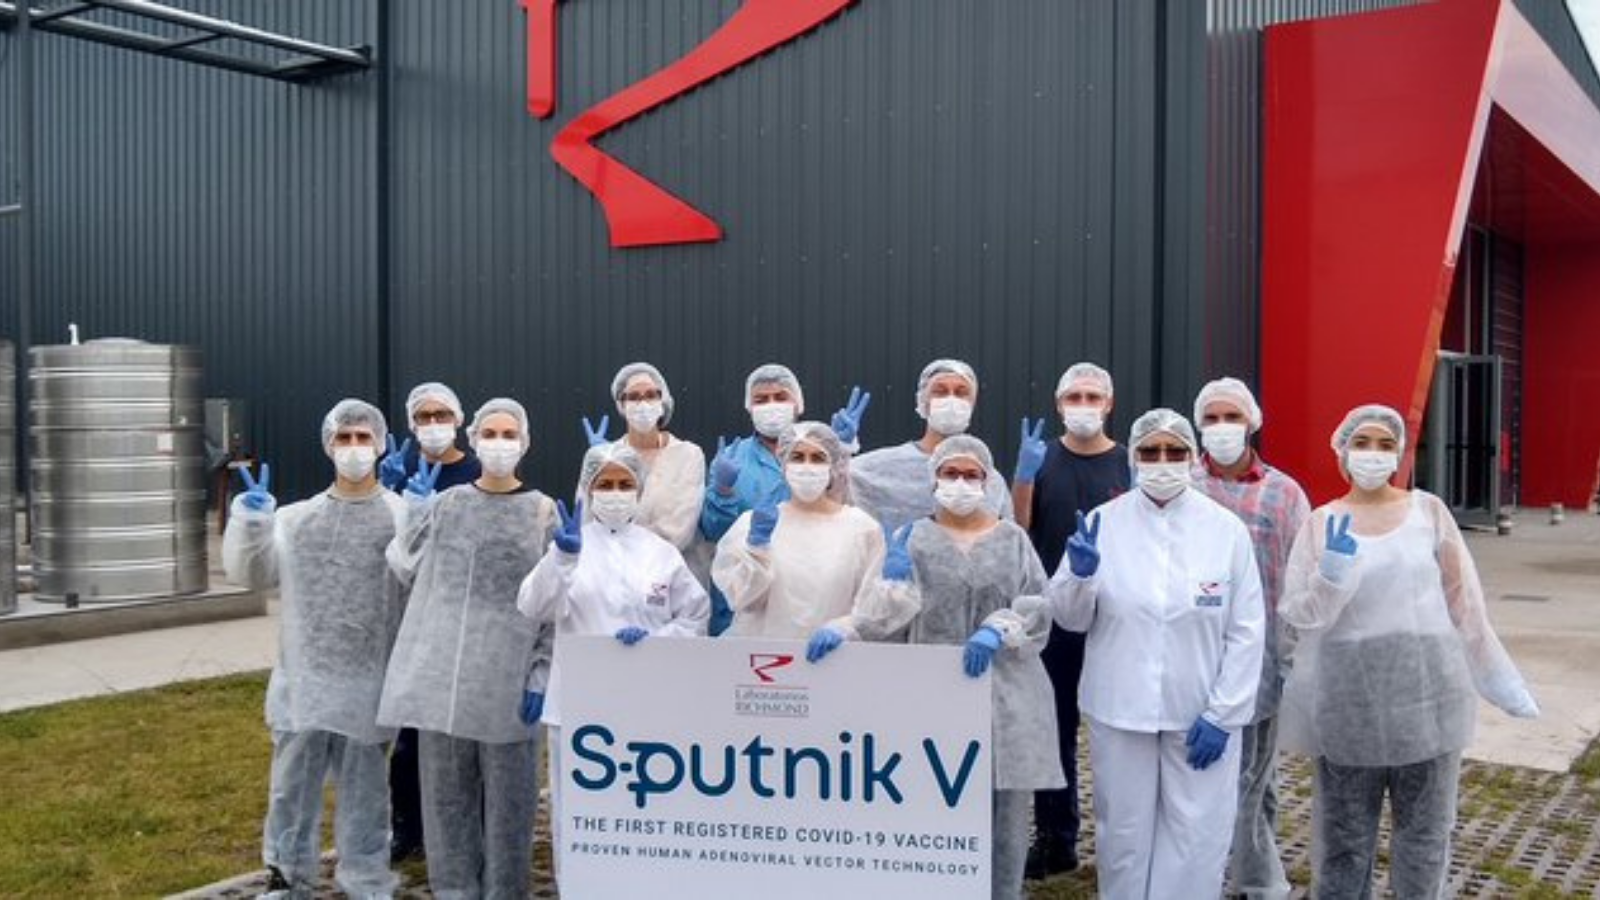 El laboratorio Richmond terminó el primer lote de vacunas Sputnik V